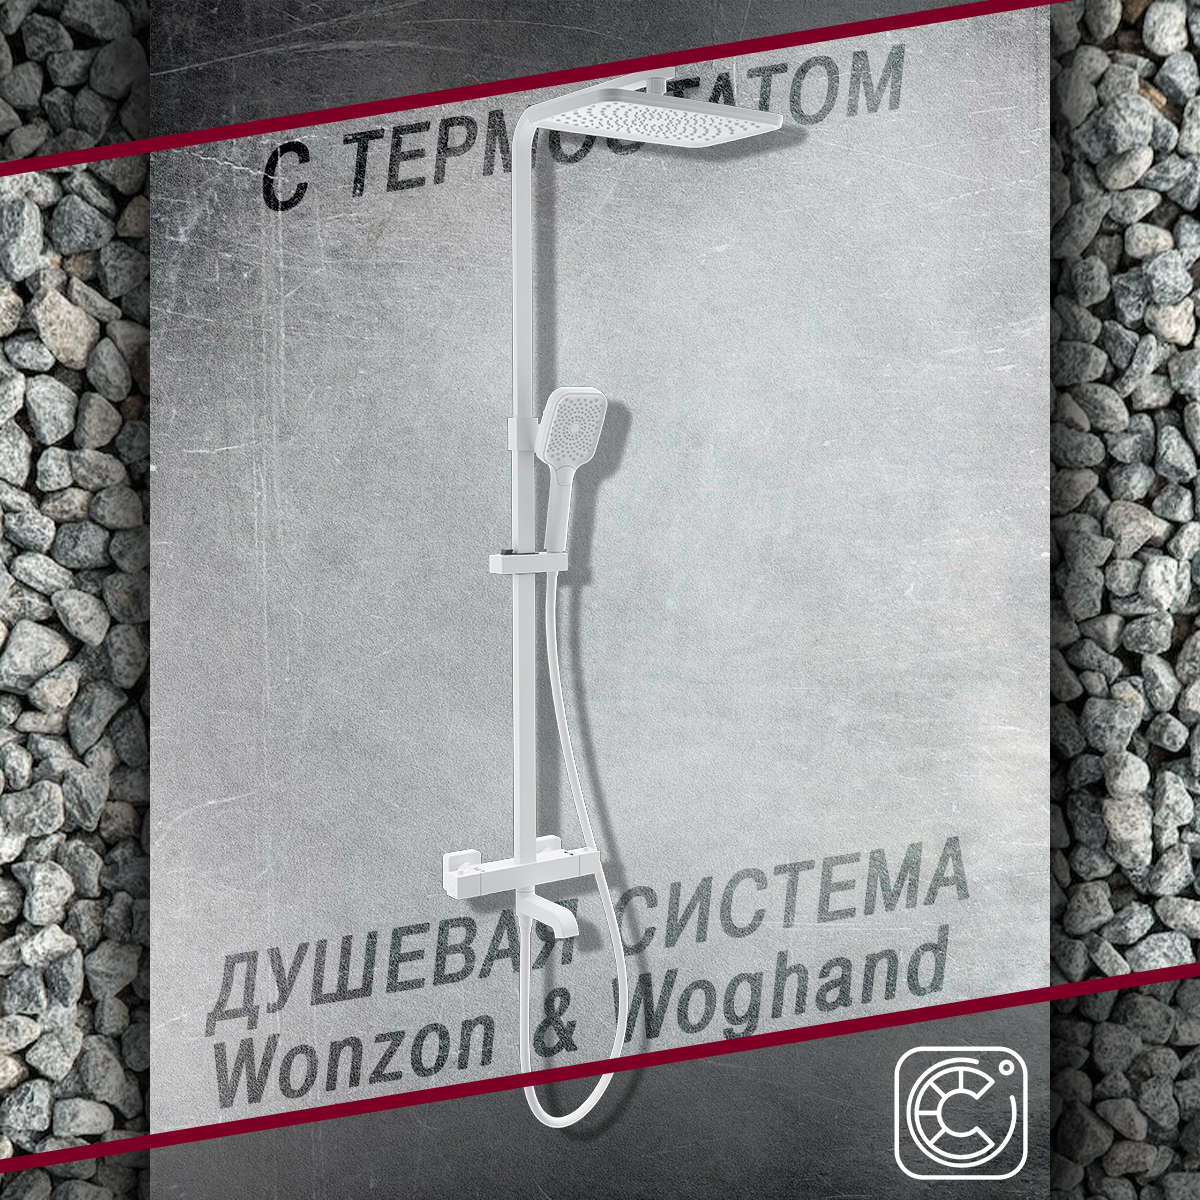 Душевой гарнитур с термостатом WONZON&WOGHAND WW-B3026-T1-MW